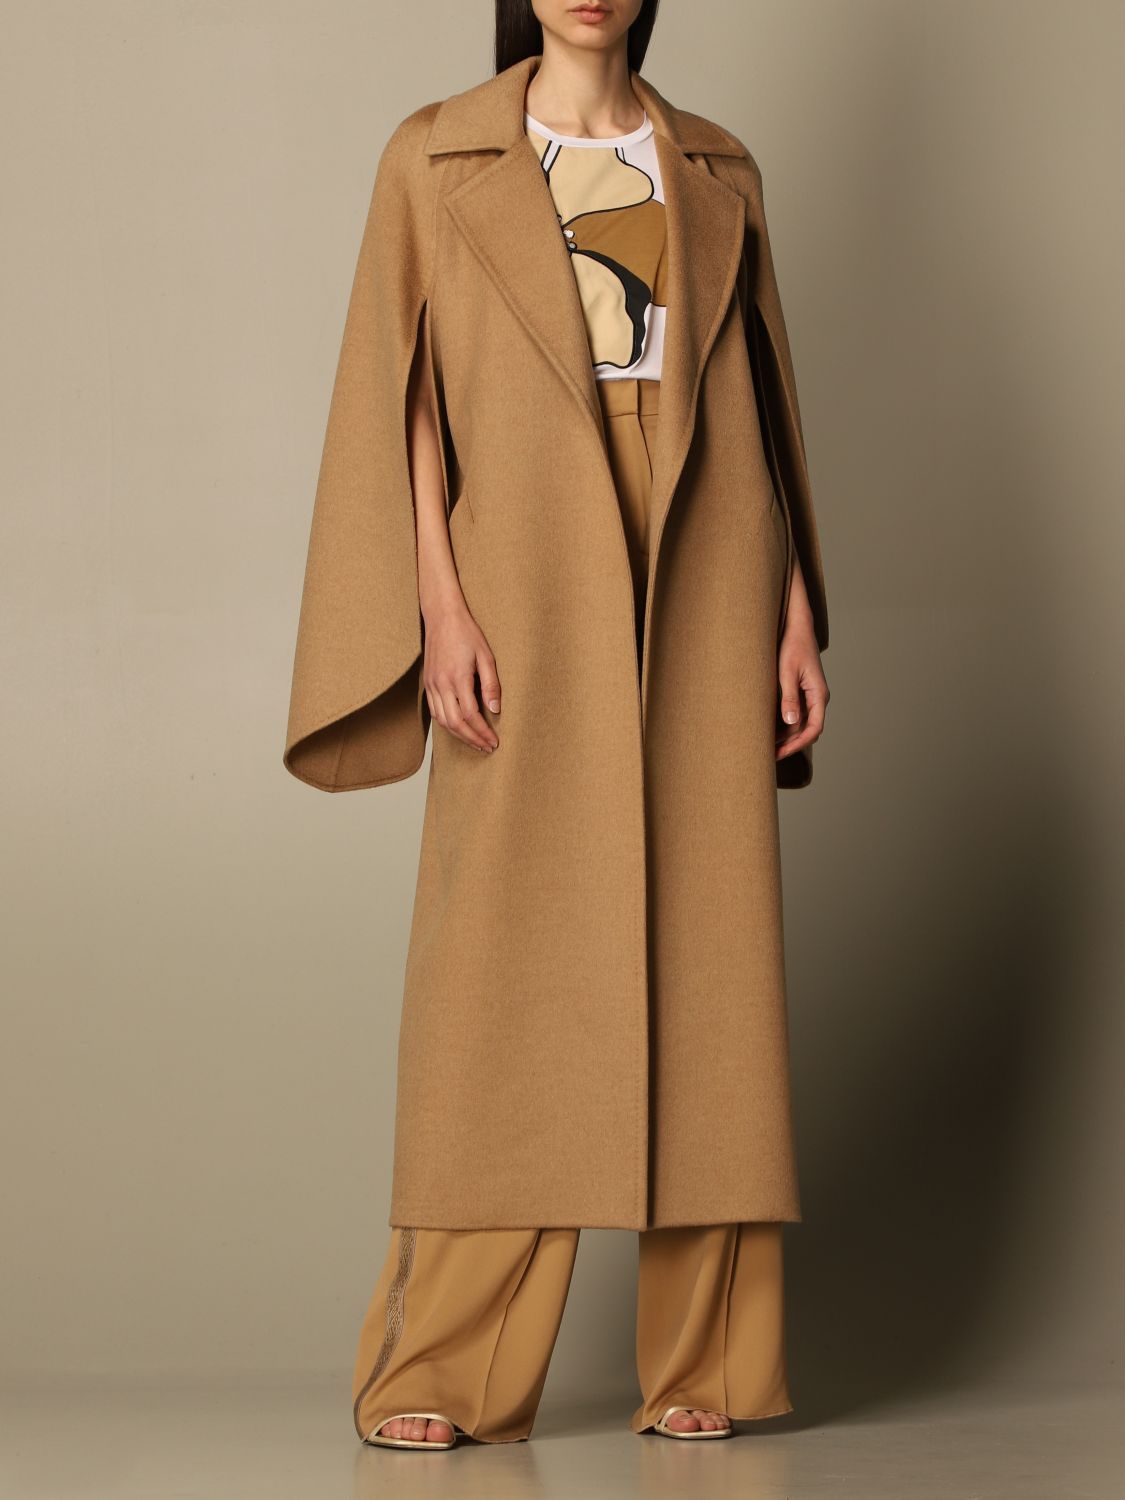 Immuniteit Moreel revolutie MAX MARA: coat in camel wool - Camel | Max Mara coat 10111218600 online on  GIGLIO.COM